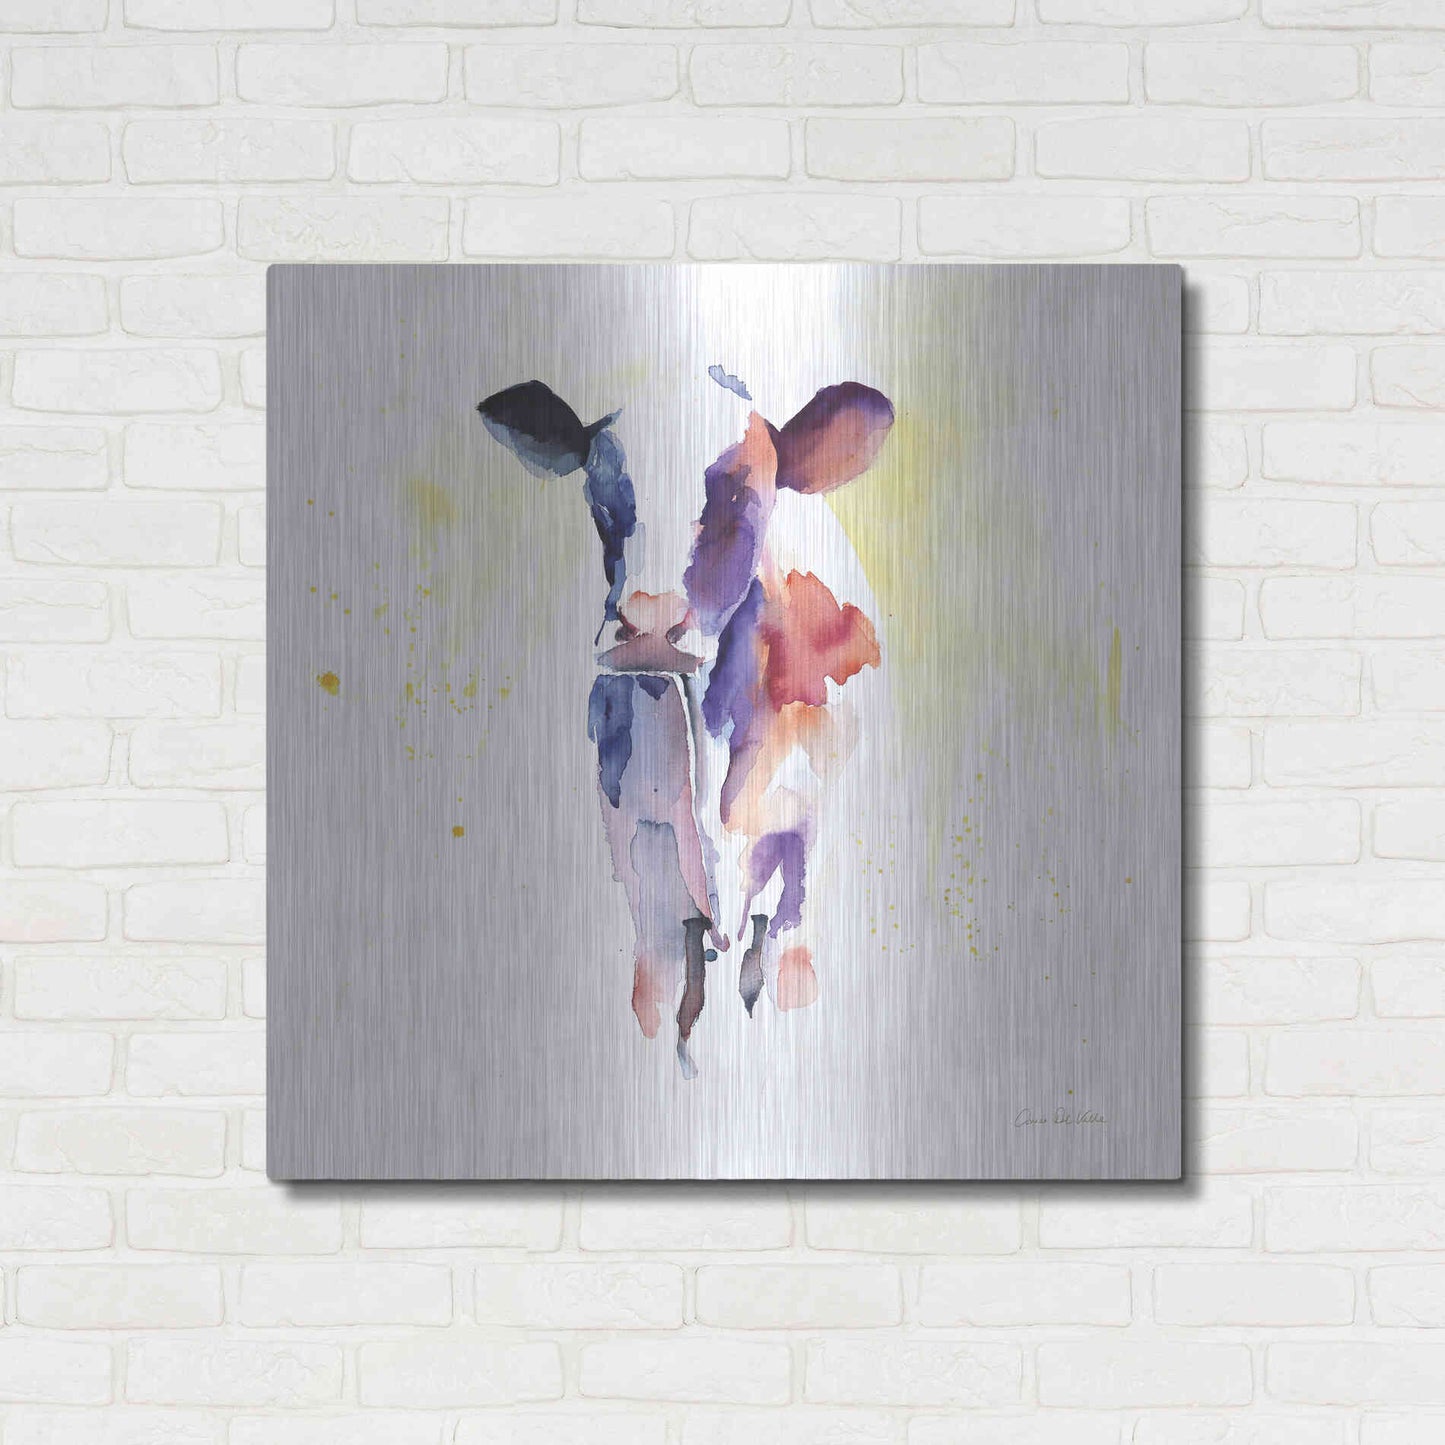 Luxe Metal Art 'Holstein II' by Alan Majchrowicz, Metal Wall Art,36x36